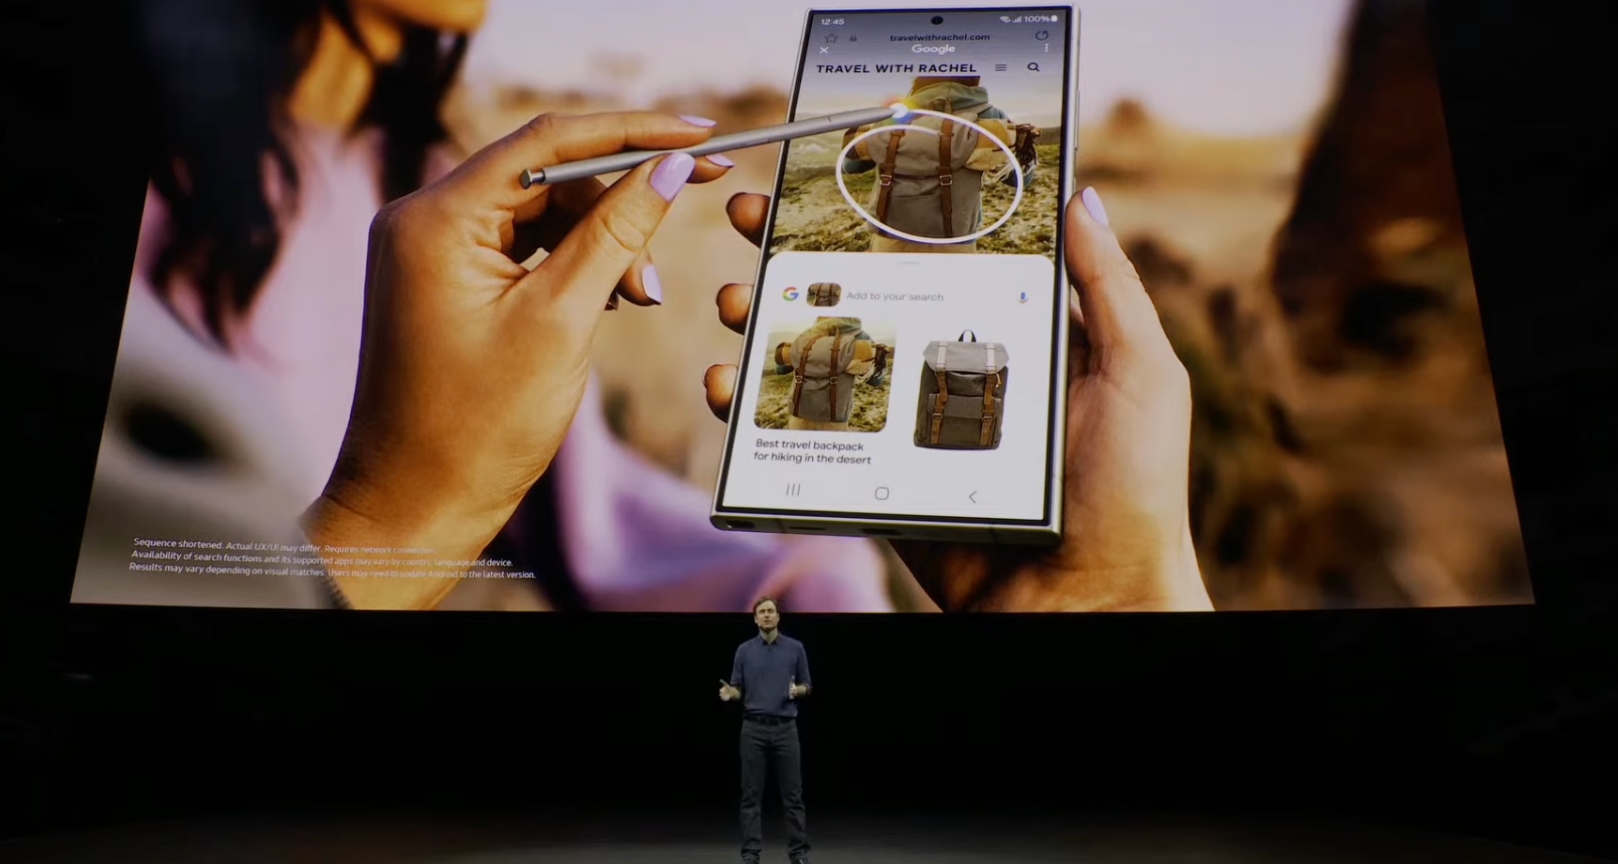 Samsung представила новые смартфоны Galaxy S24 и решения ИИ – трансляция